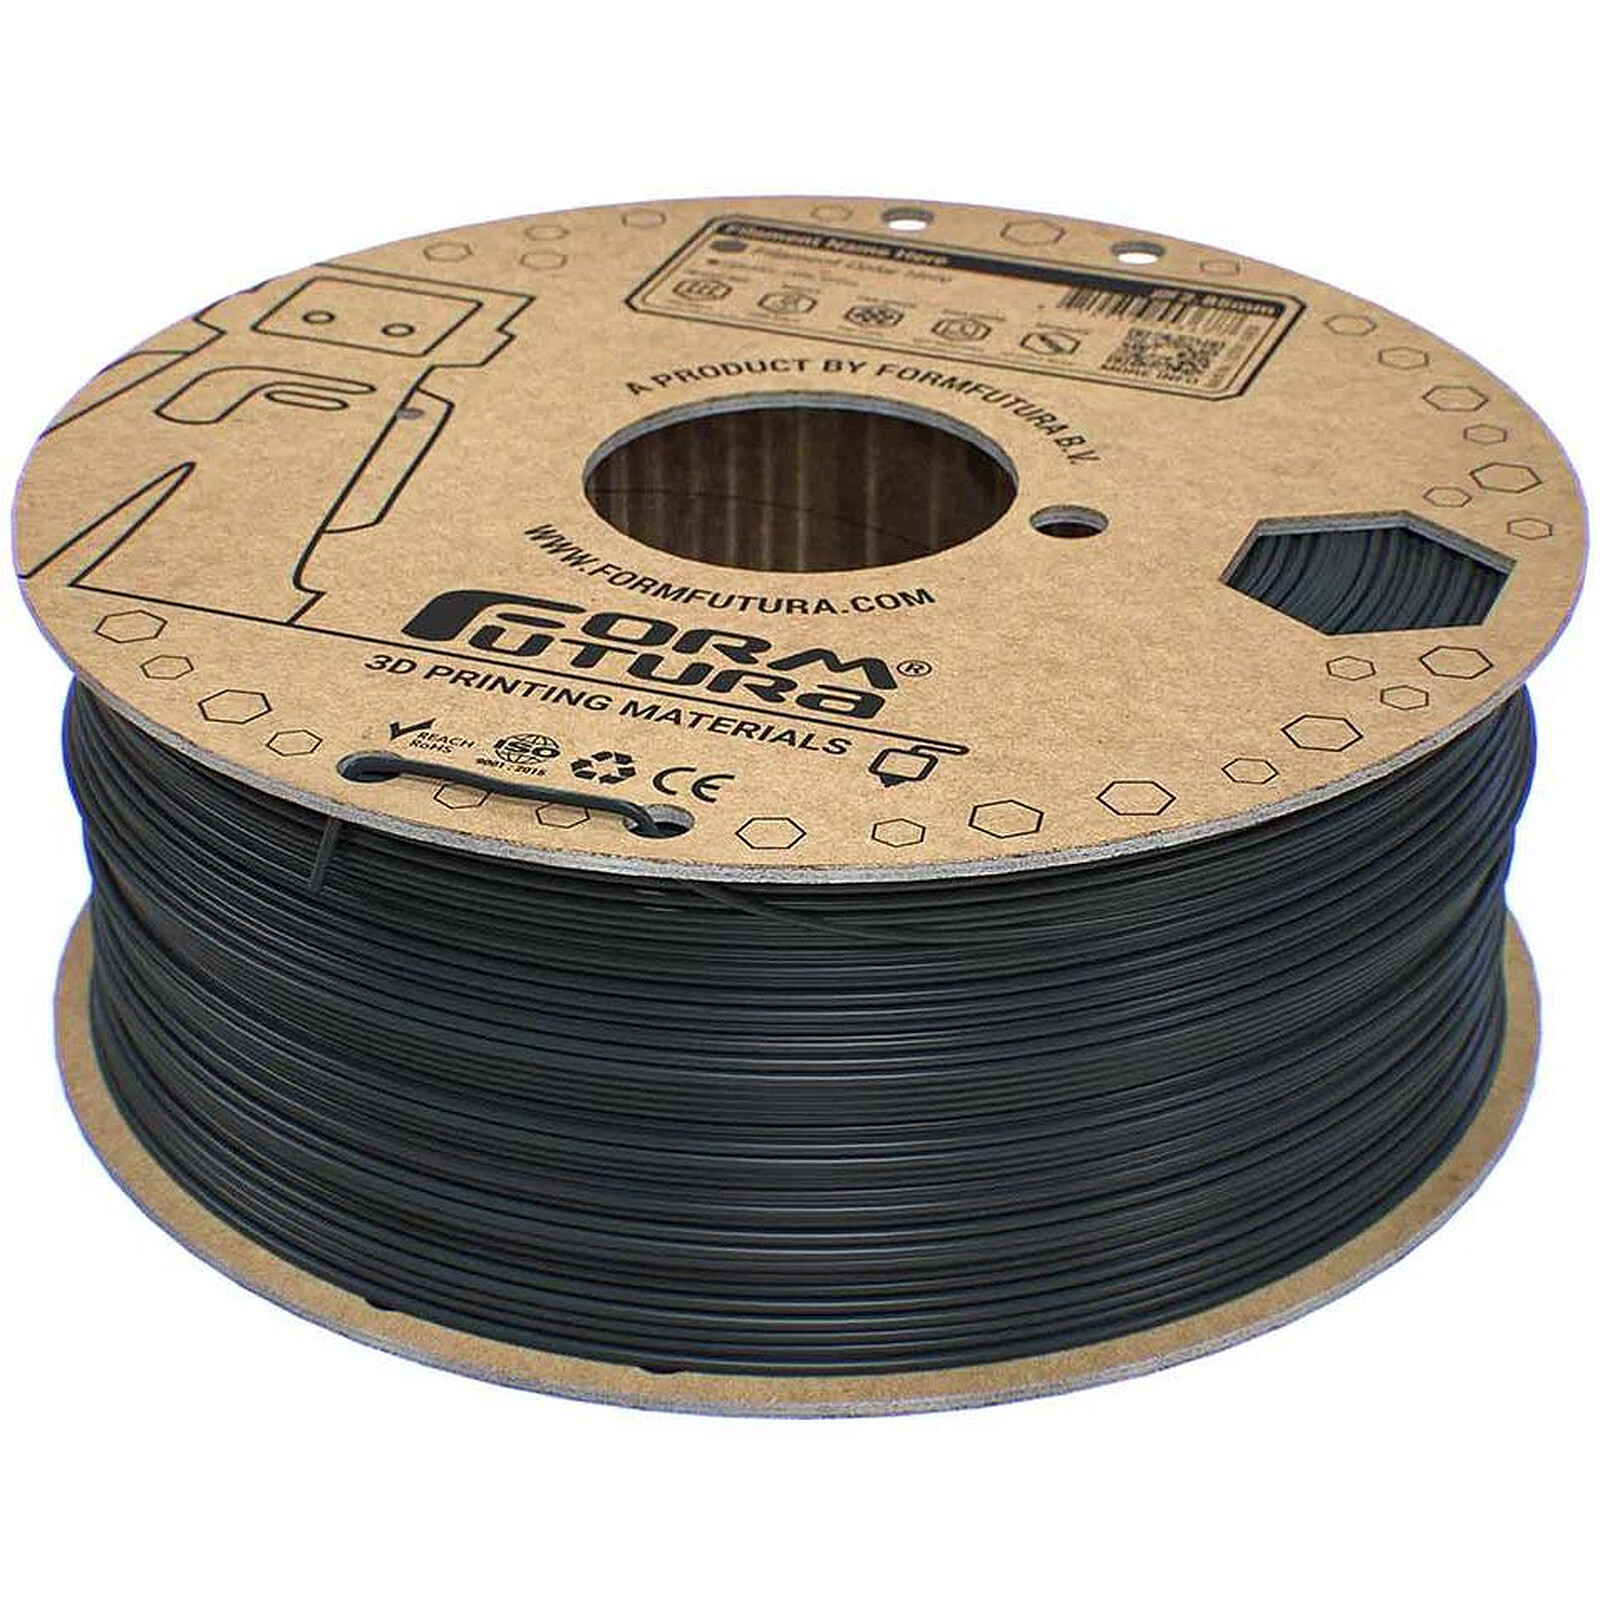 Dagoma - Filament Chromatik PLA Gris Anthracite - diamètre 1,75mm - 750g -  Pour imprimante 3D - Filaments PLA - Impression 3D - Les Machines